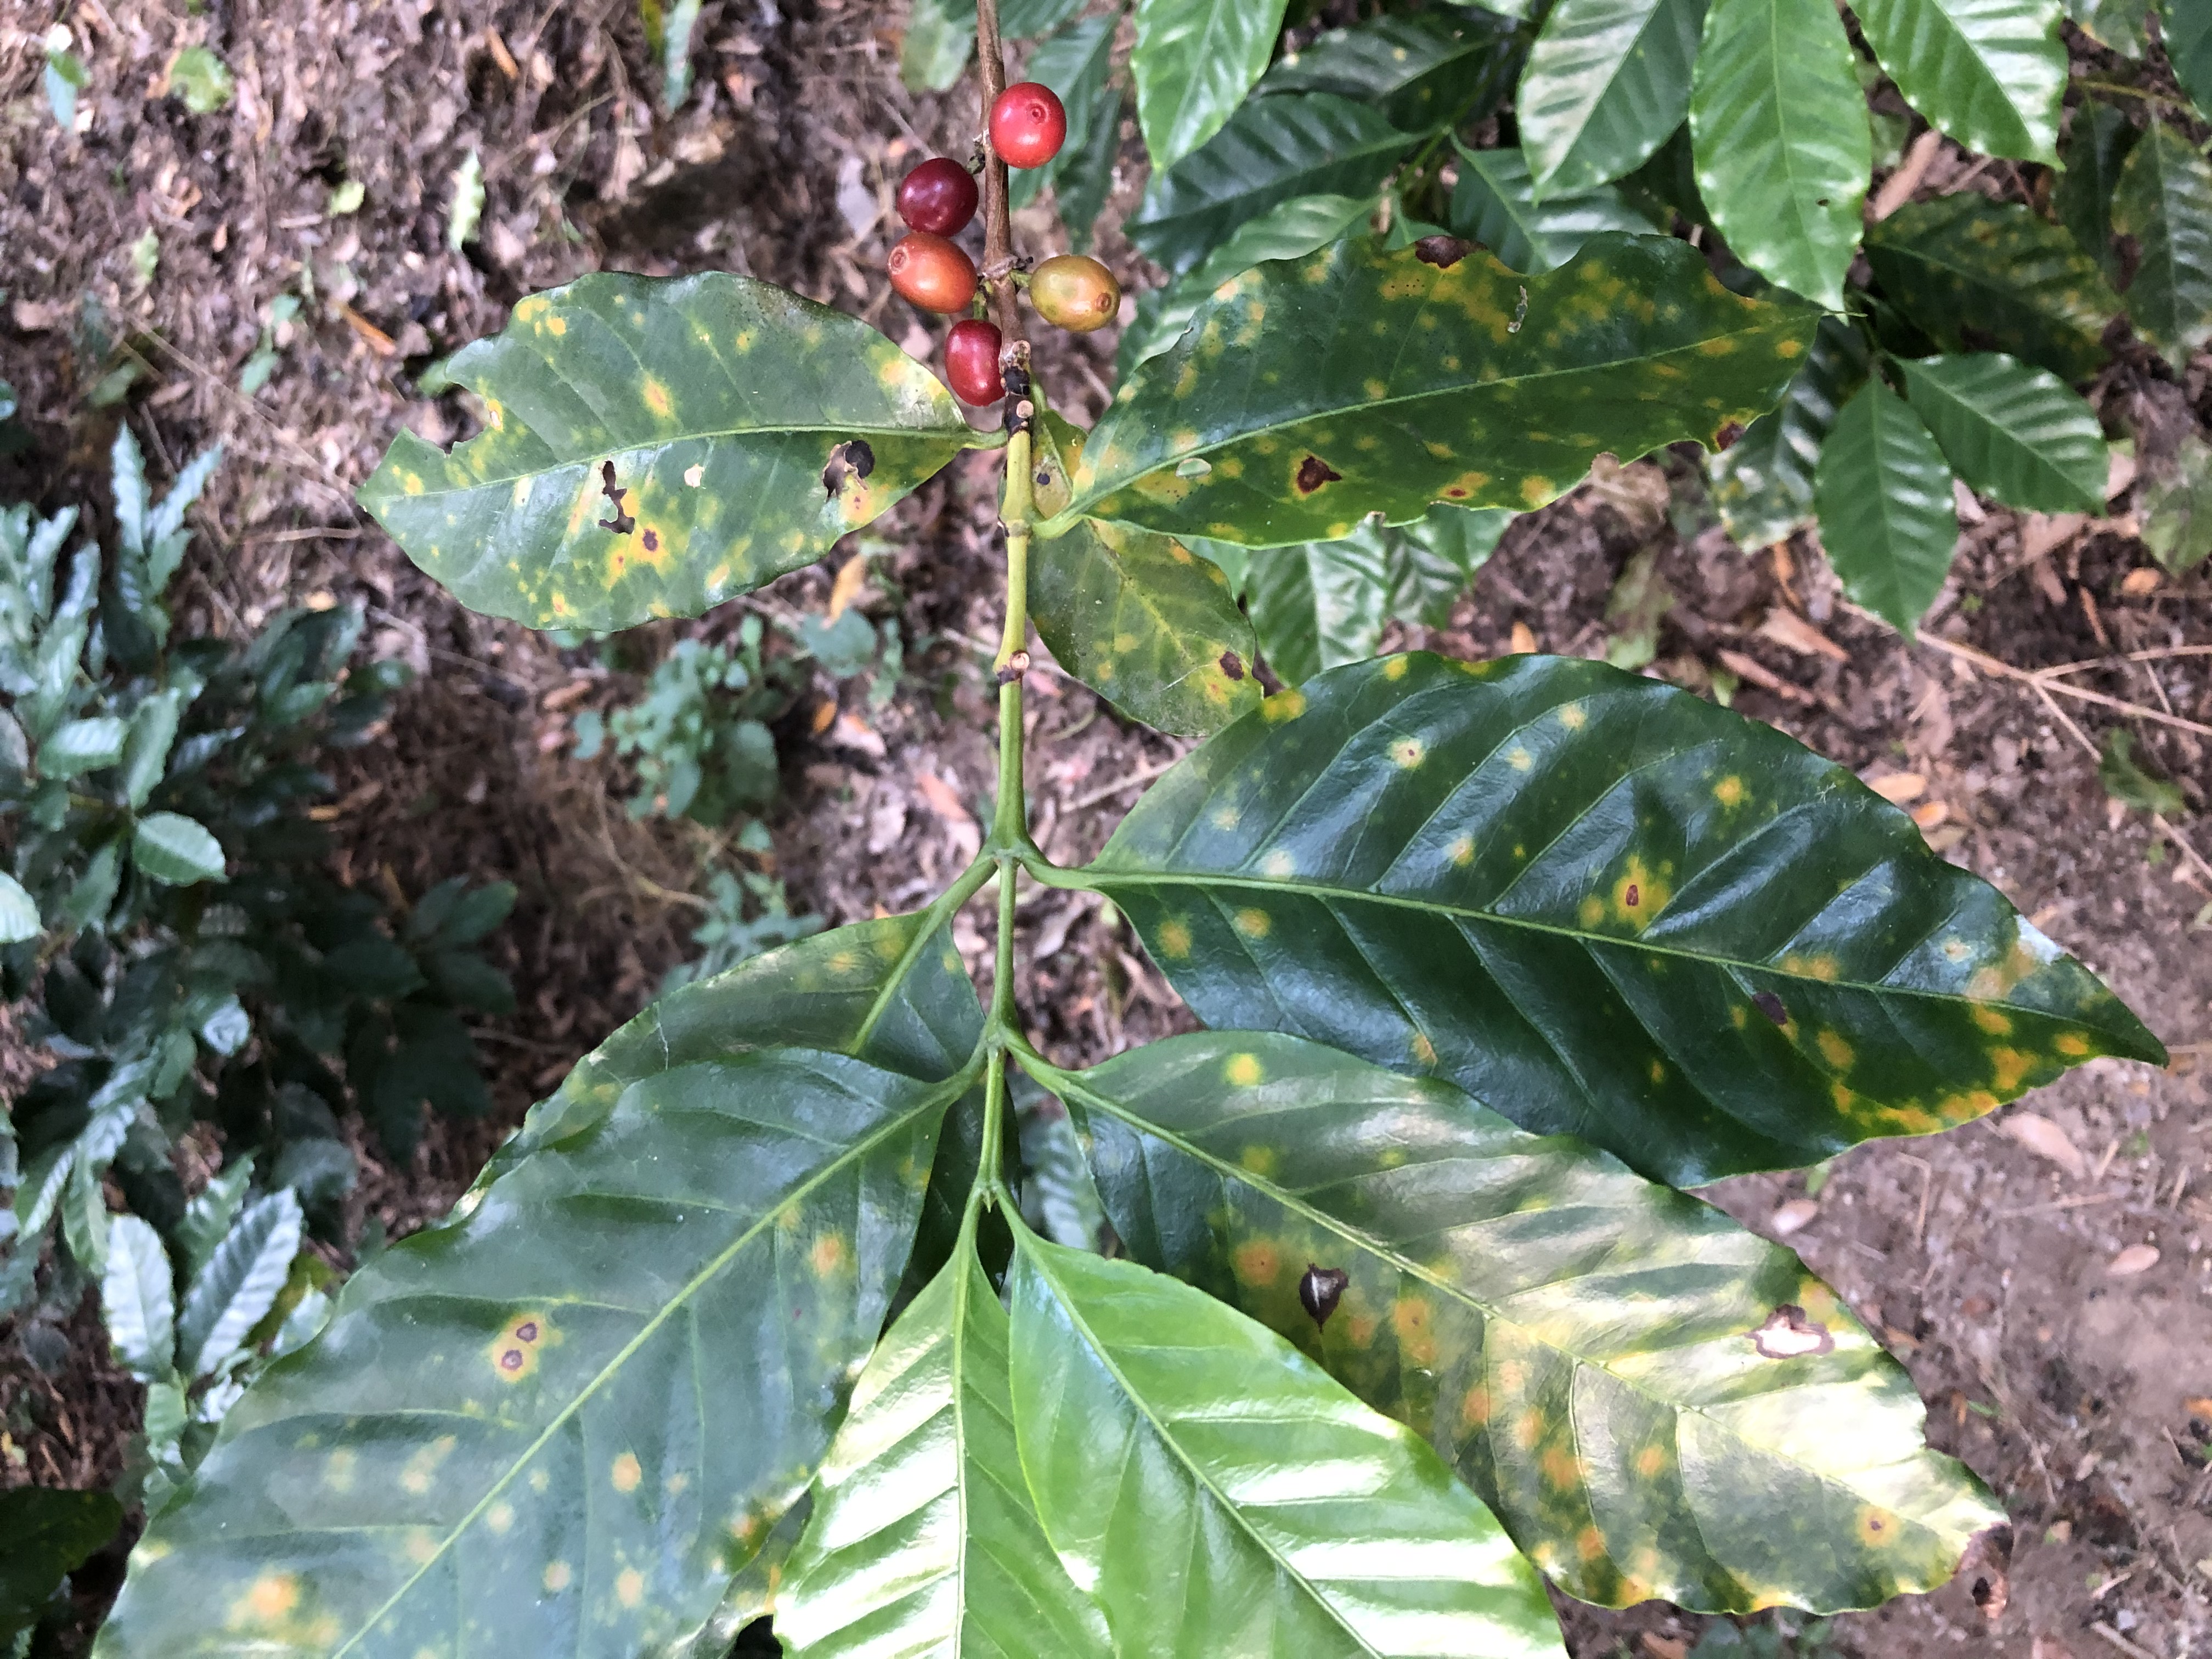 Coffee plant damaged by coffee leaf rust disease (“la roya”)